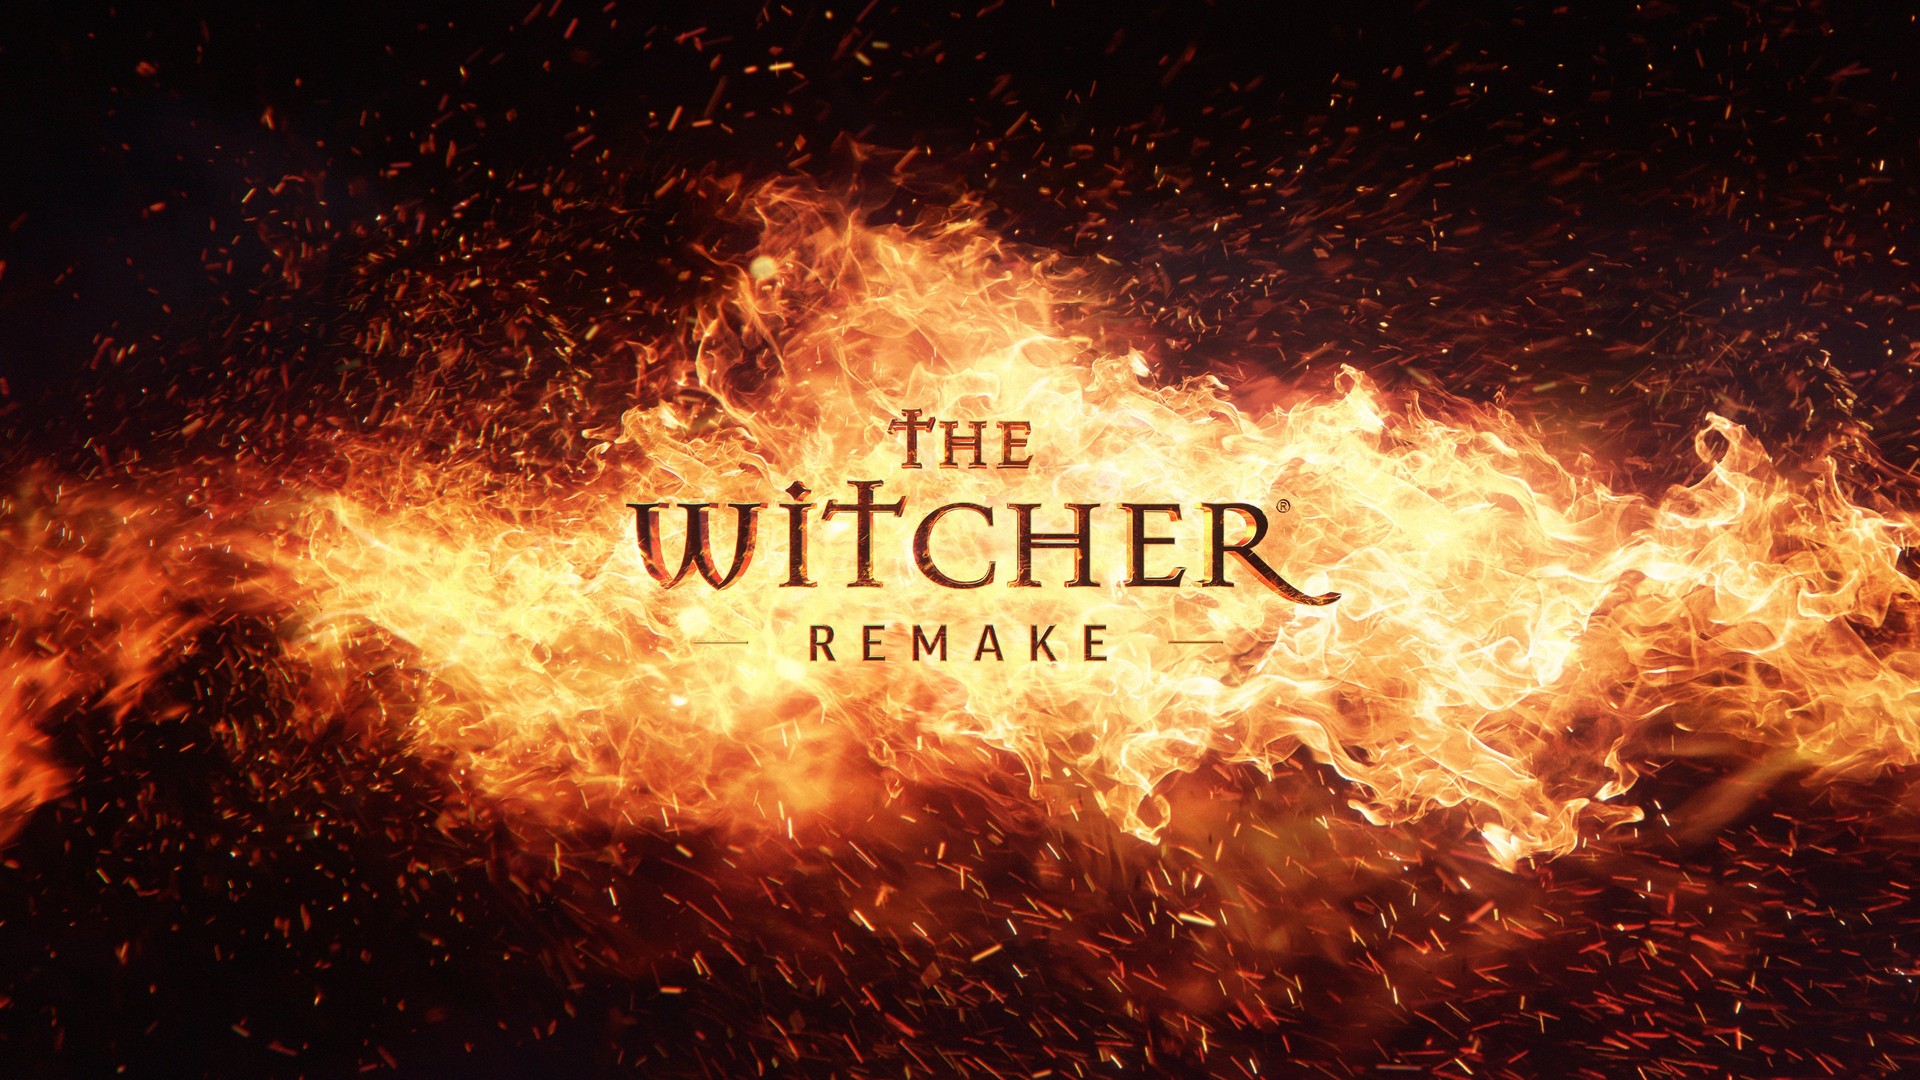 The Witcher Remake uscirà dopo il nuovo capitolo della saga